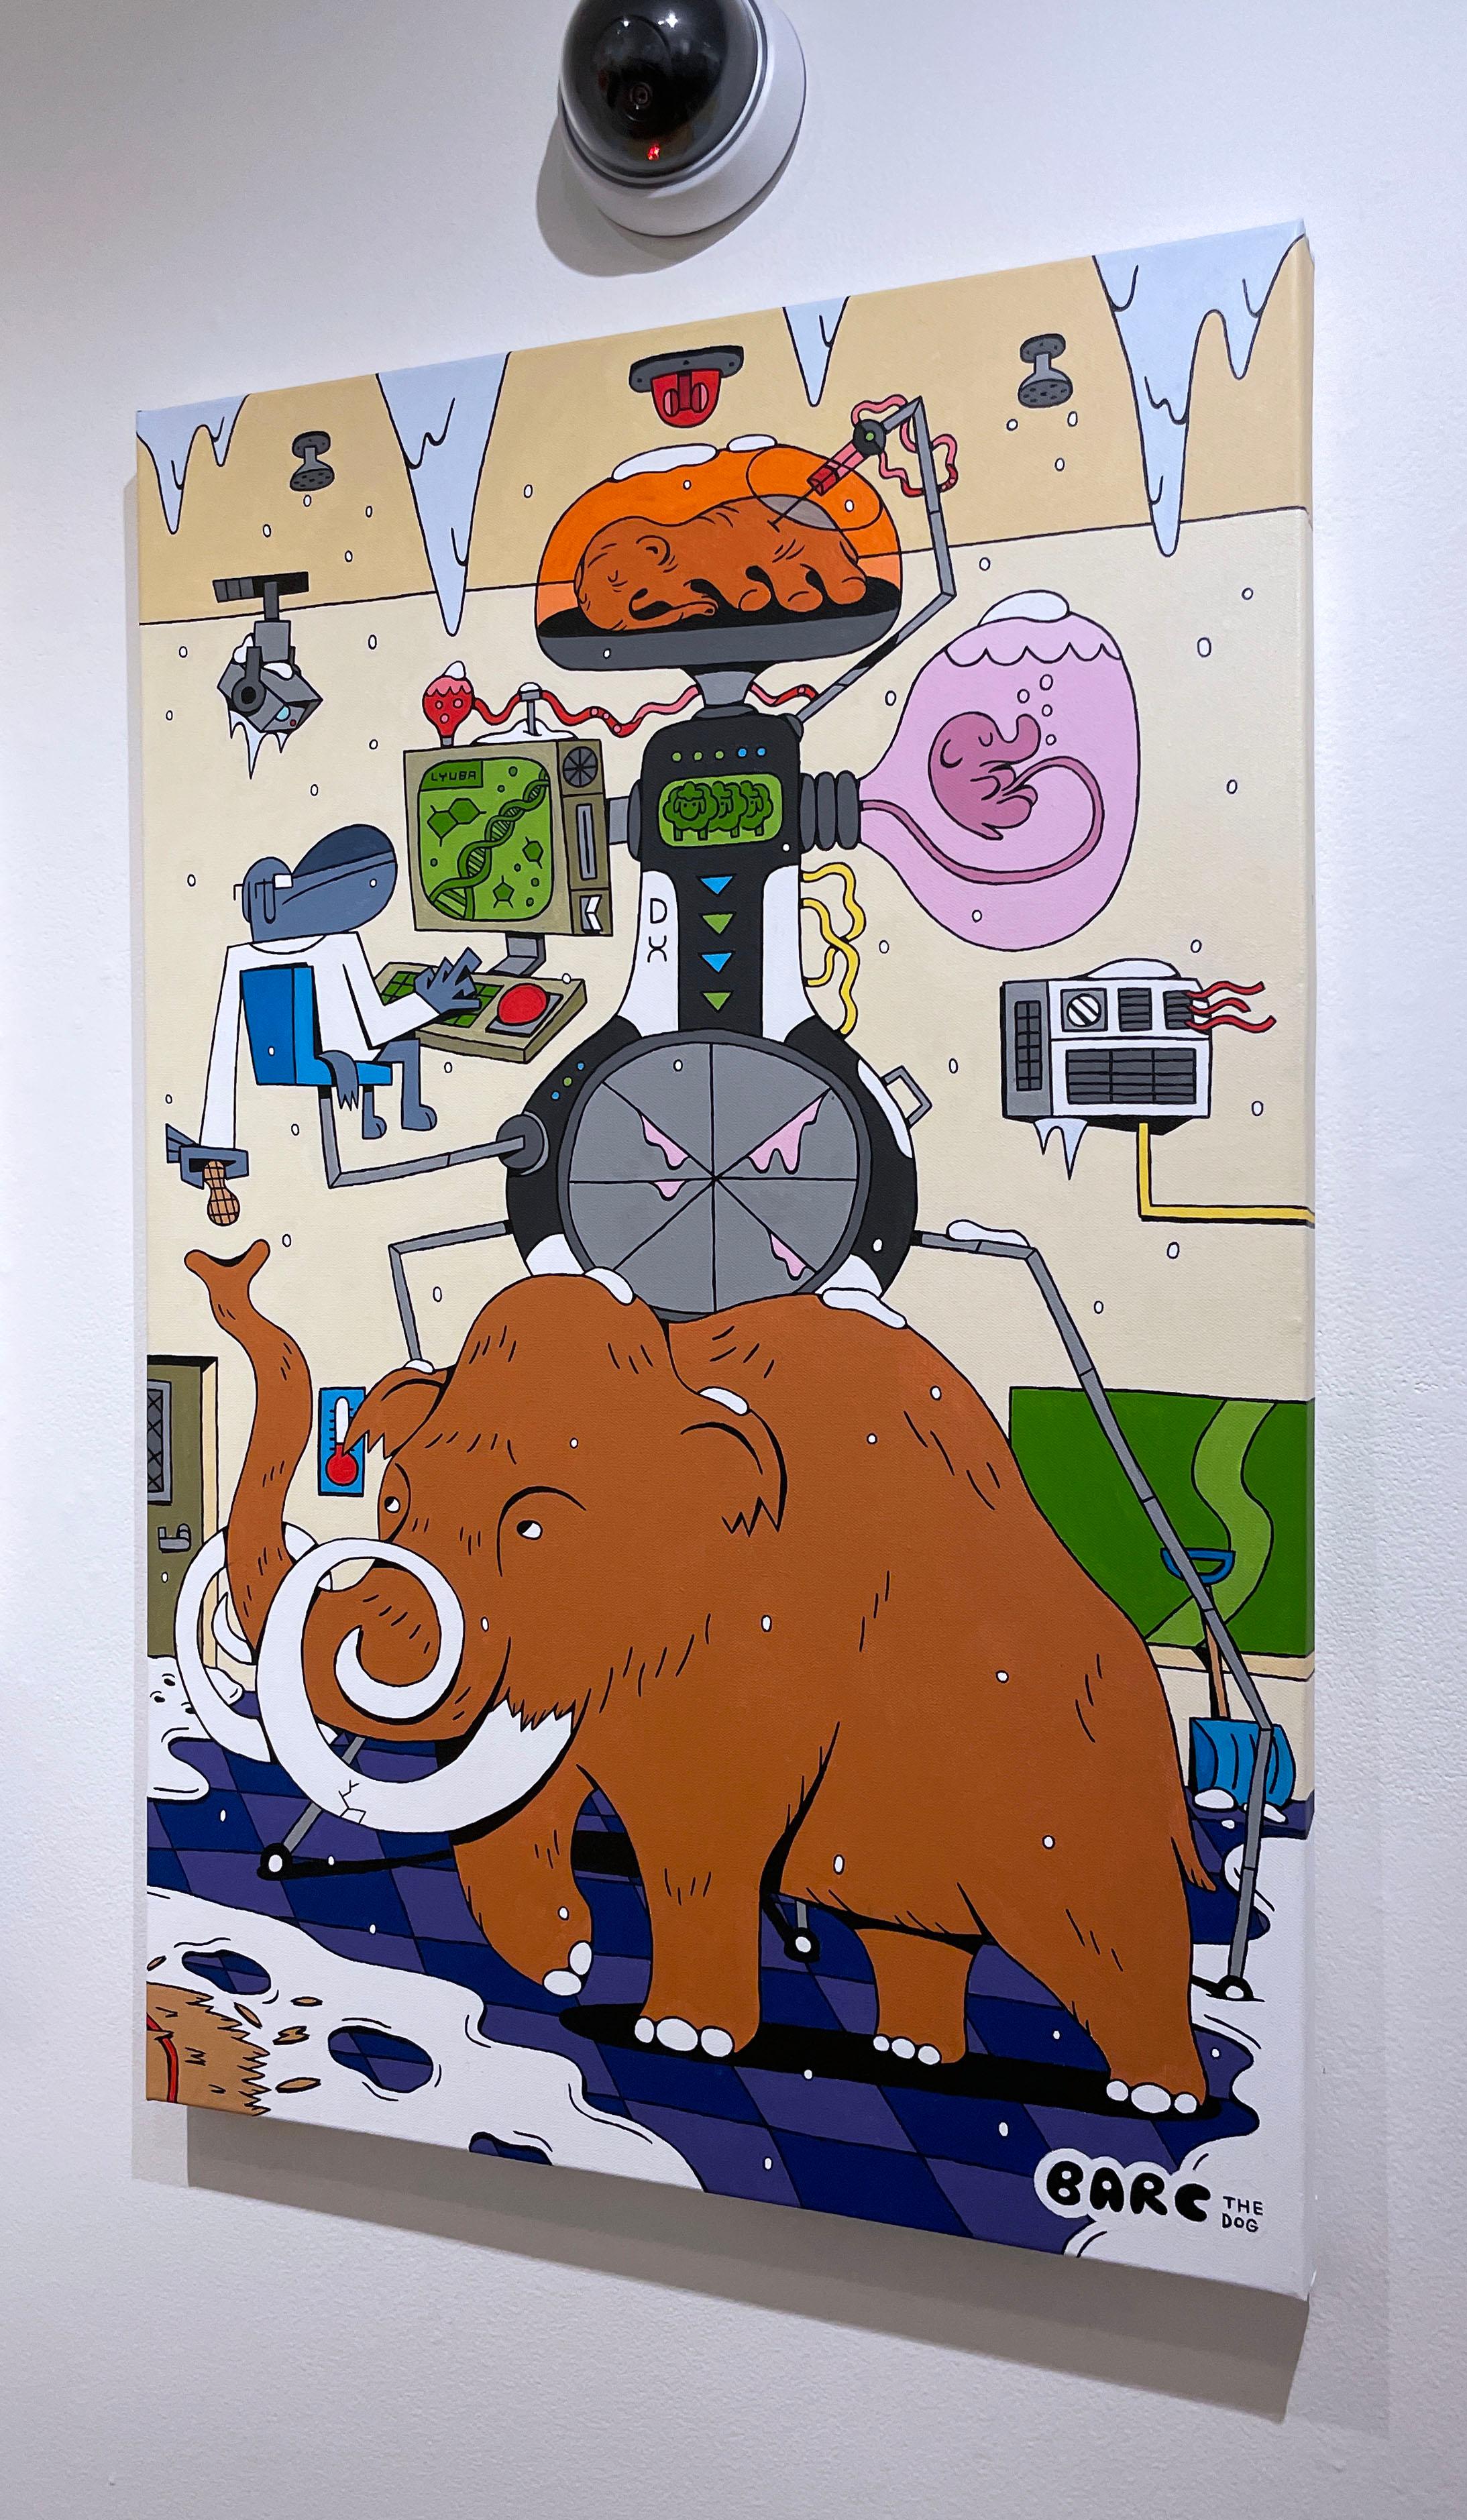 De-Extinctionizer (Lyuba) von BARC, der Hund, im Comic-Stil, Wollmütterchen (Grau), Animal Painting, von BARC the dog